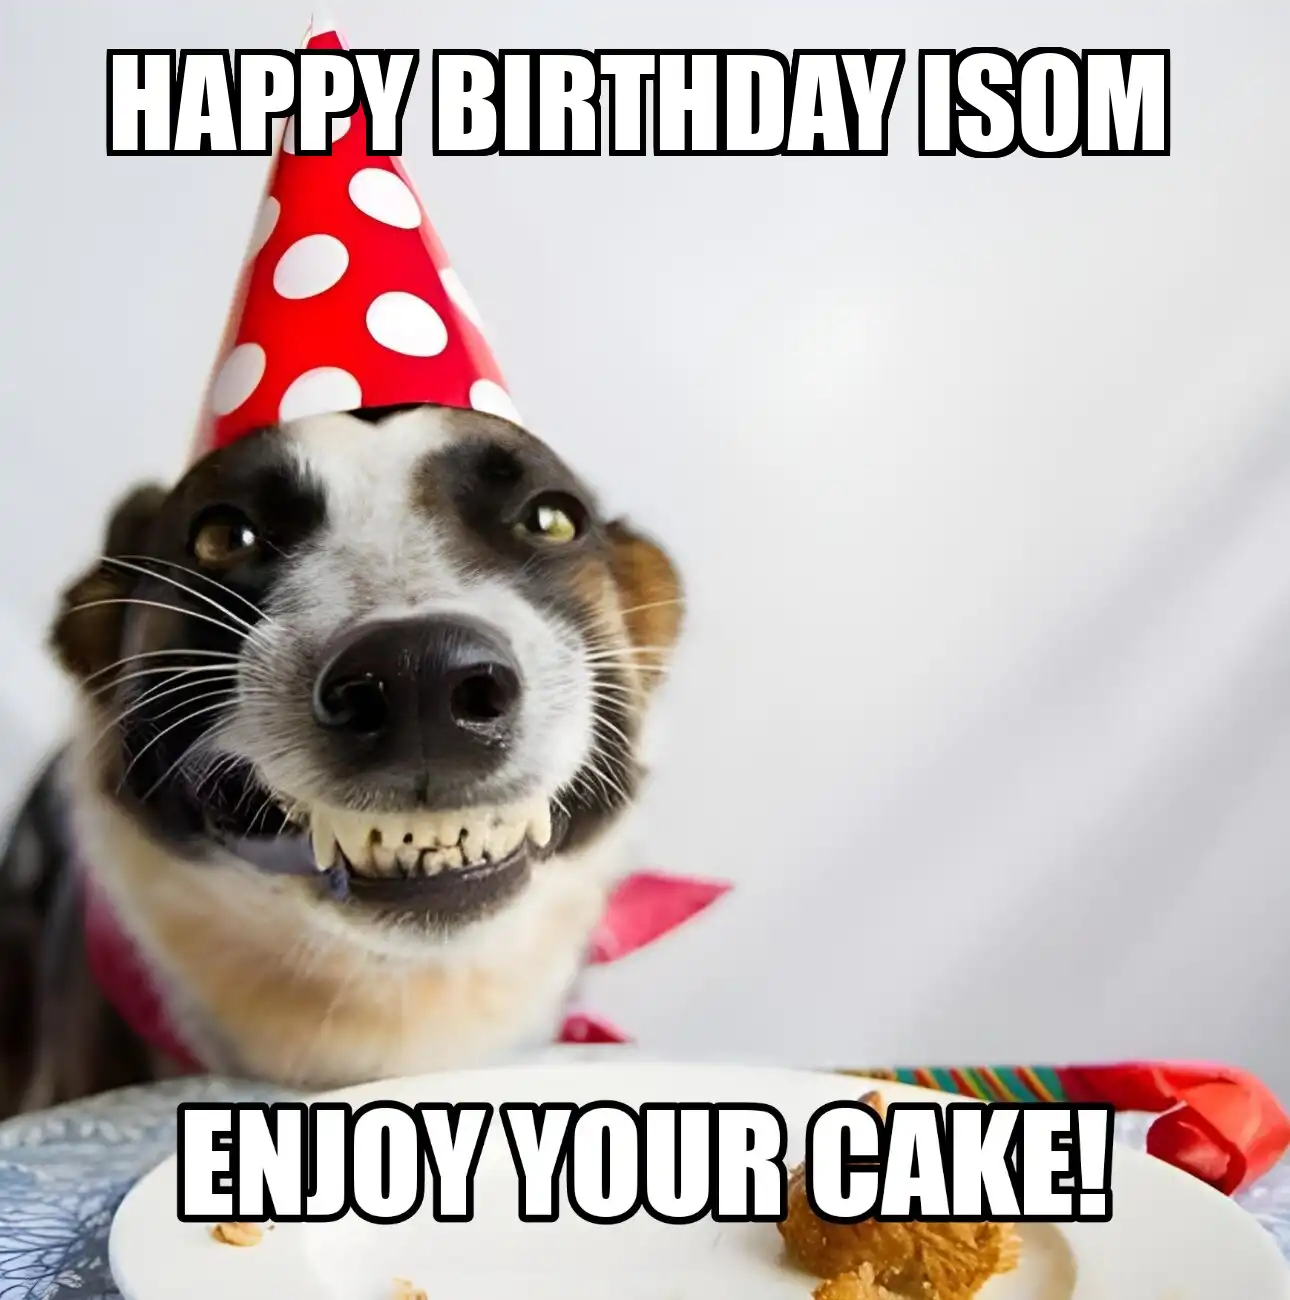 Happy Birthday Isom Enjoy Your Cake Dog Meme